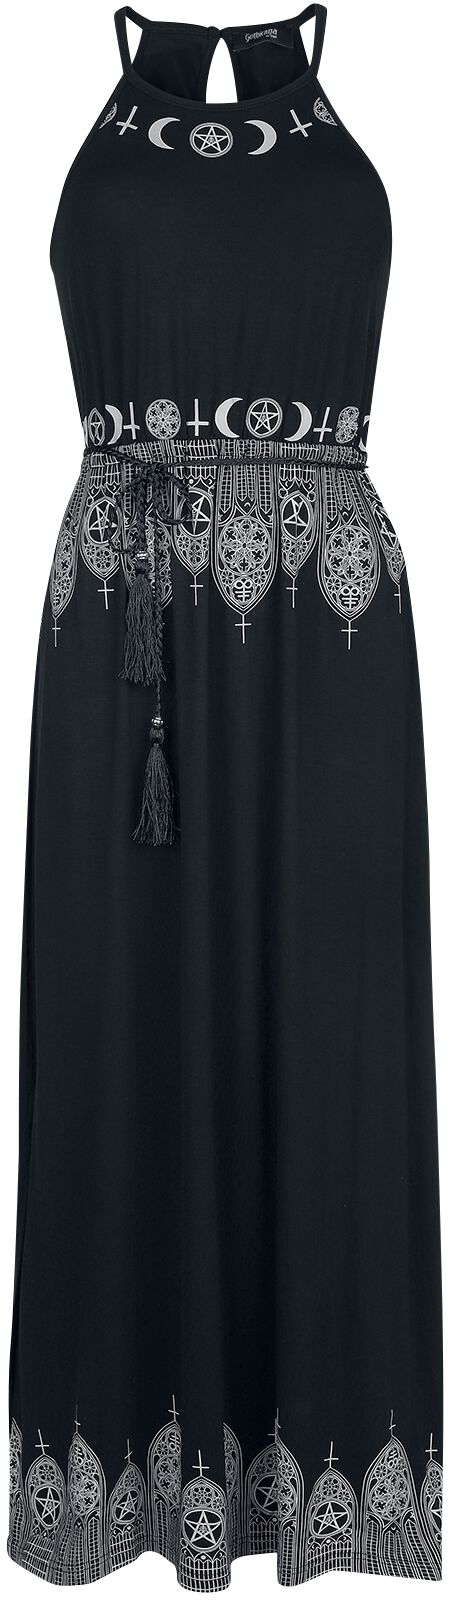 Gothicana by EMP Schwarzes Maxikleid mit Prints und schmalem Bindegürtel Langes Kleid schwarz in 4XL